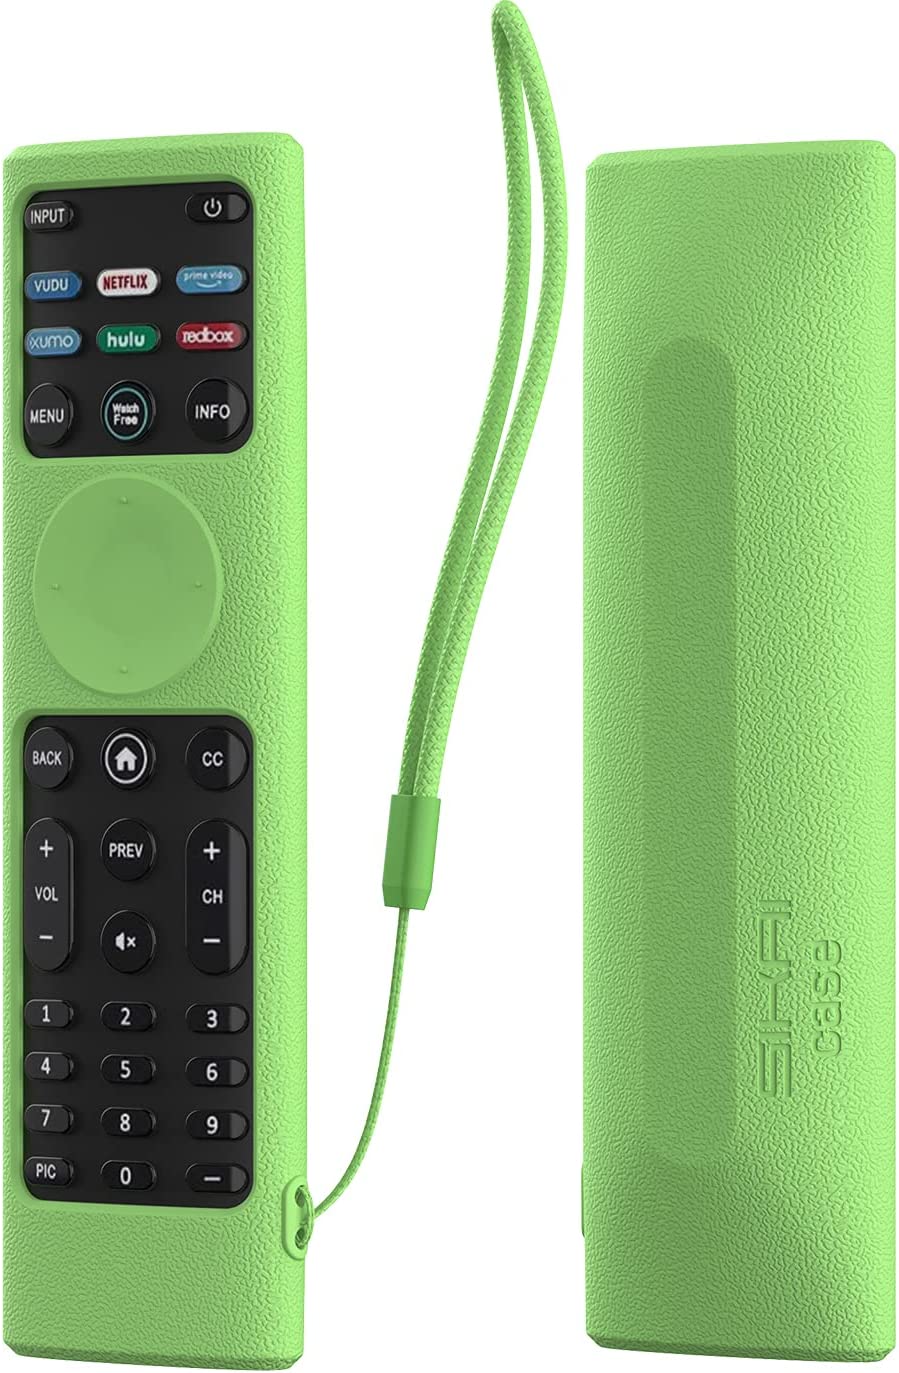 Silicone Case Cover for VIZIO XRT140 WatchFree Smart TV Remote